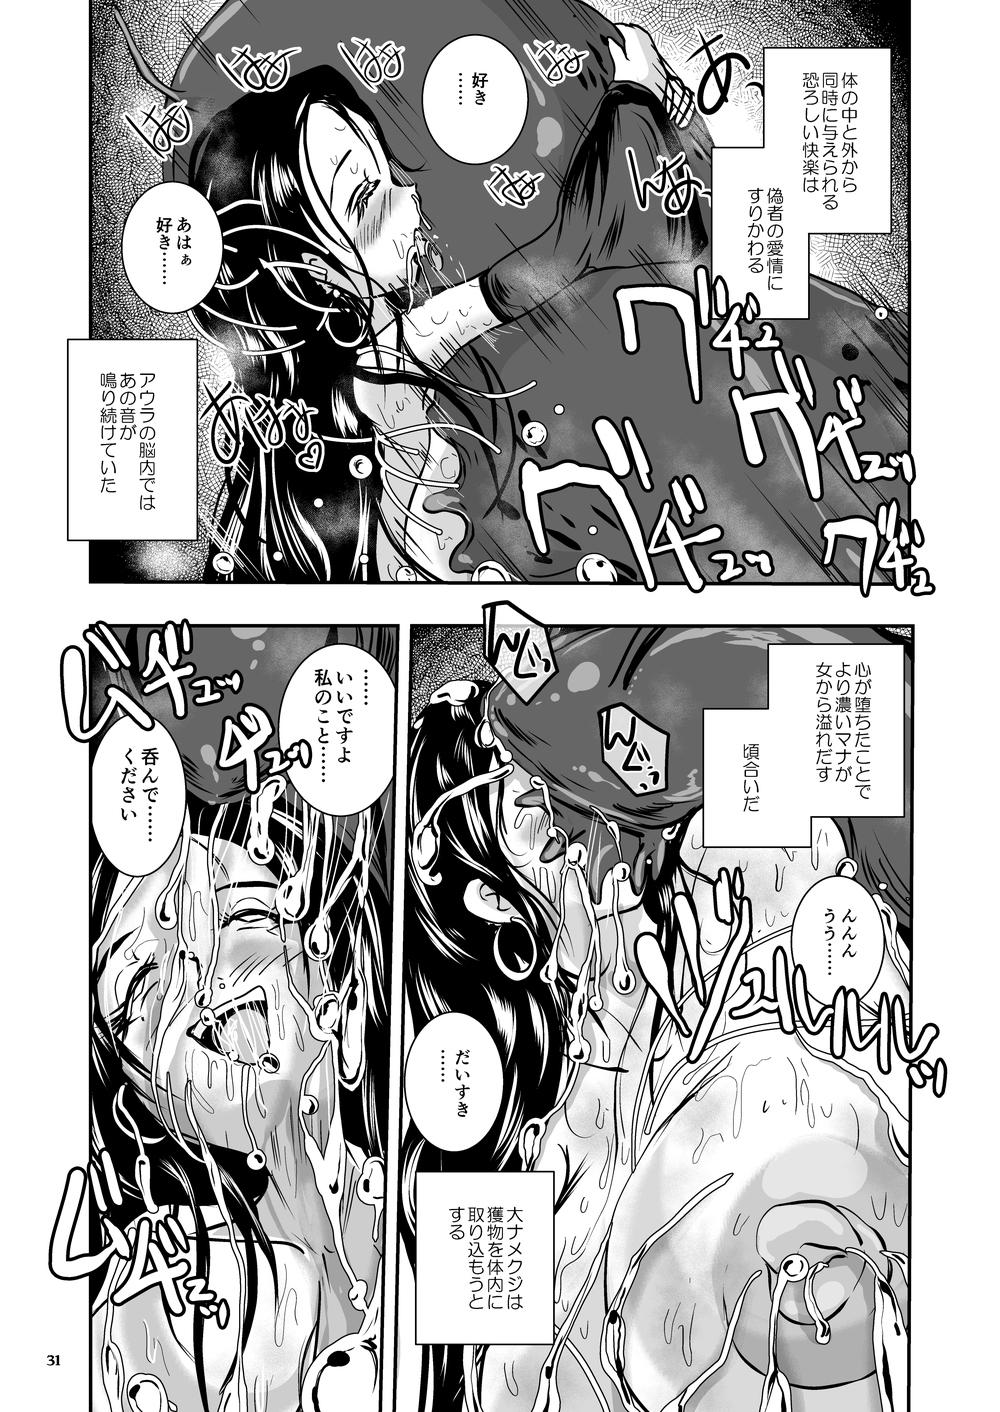 Oonamekuji to Kurokami no Mahoutsukai - Parasitized Giant Slugs V.S. Sorceress of the Black Hair as Aura 30